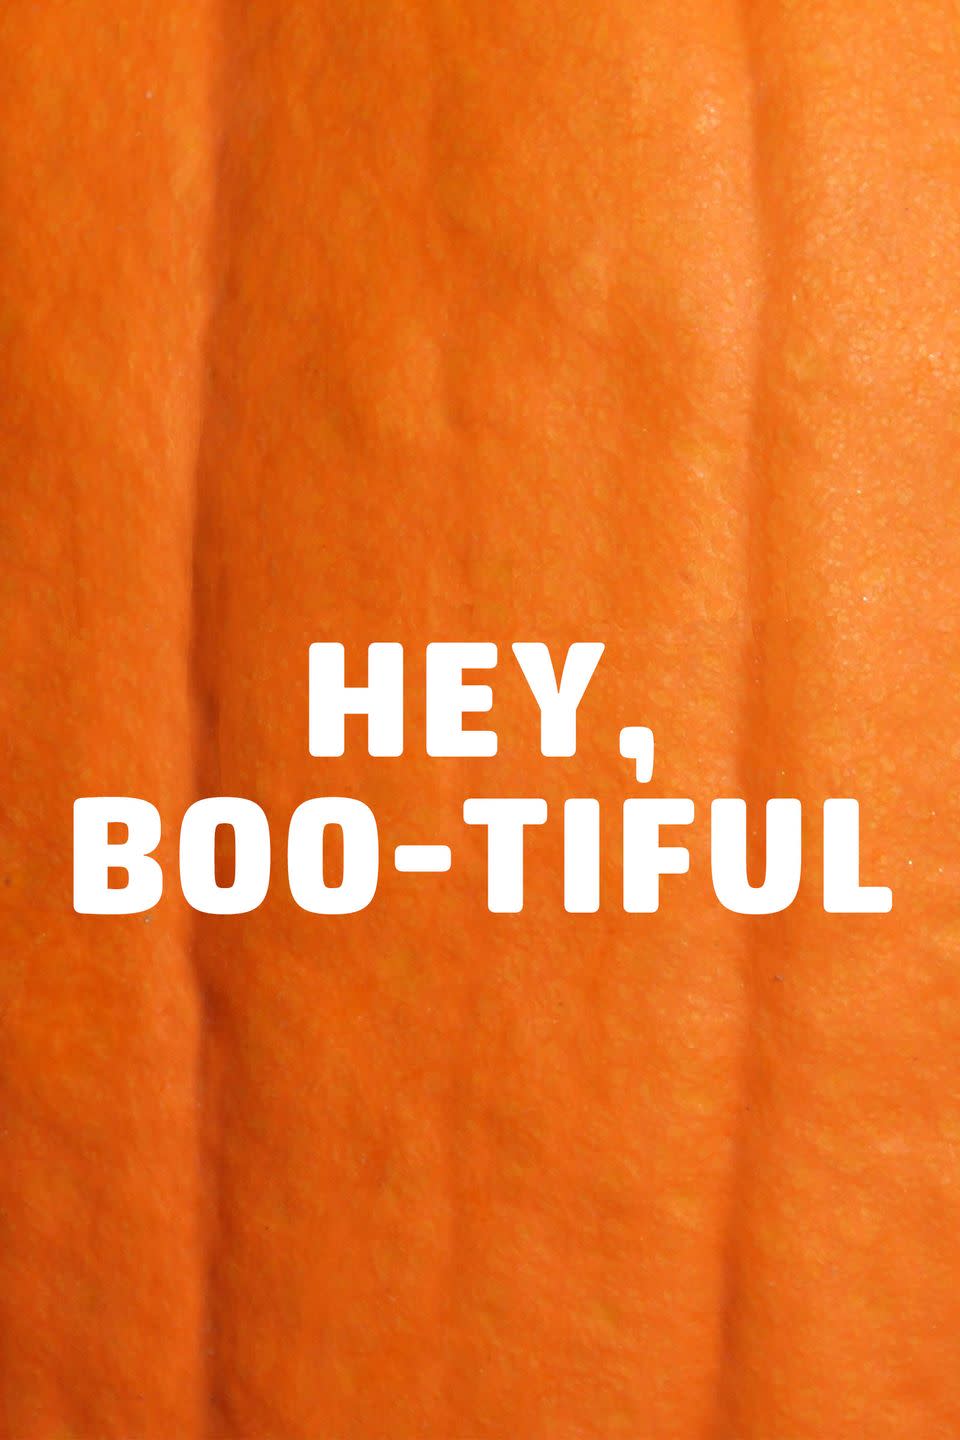 43) Hey, Boo-tiful